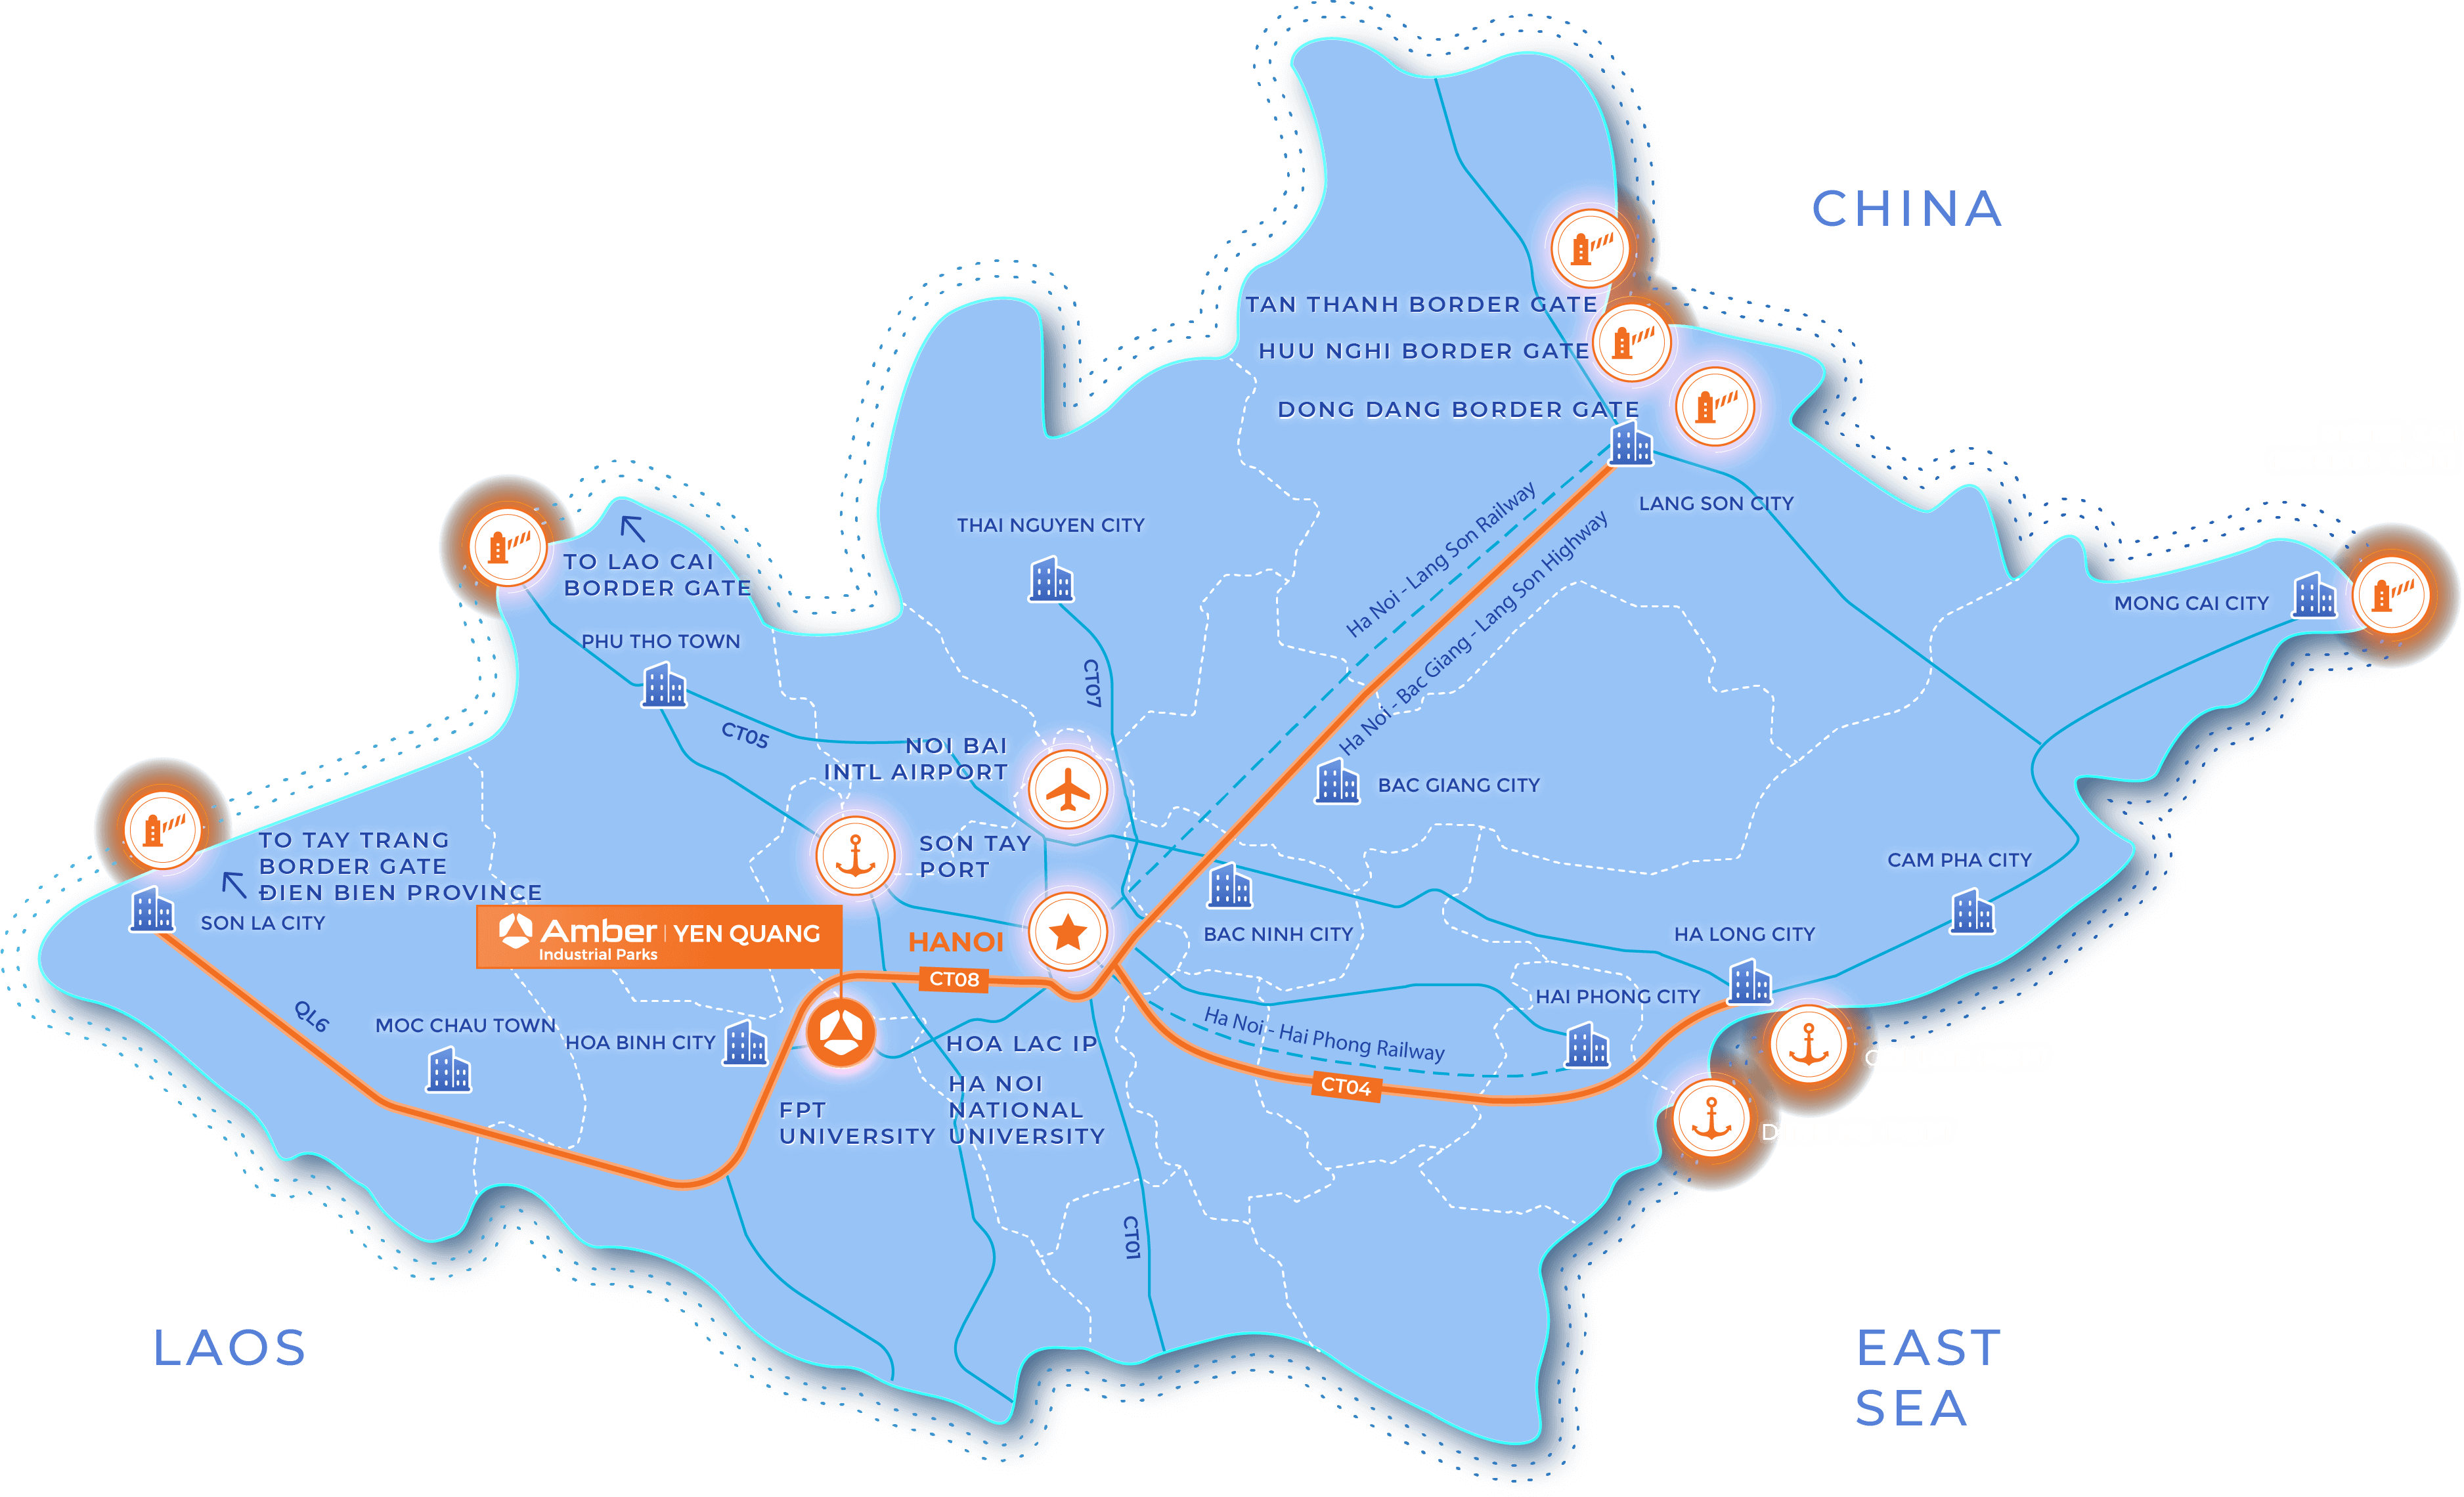 Yen Quang IP - Industrial